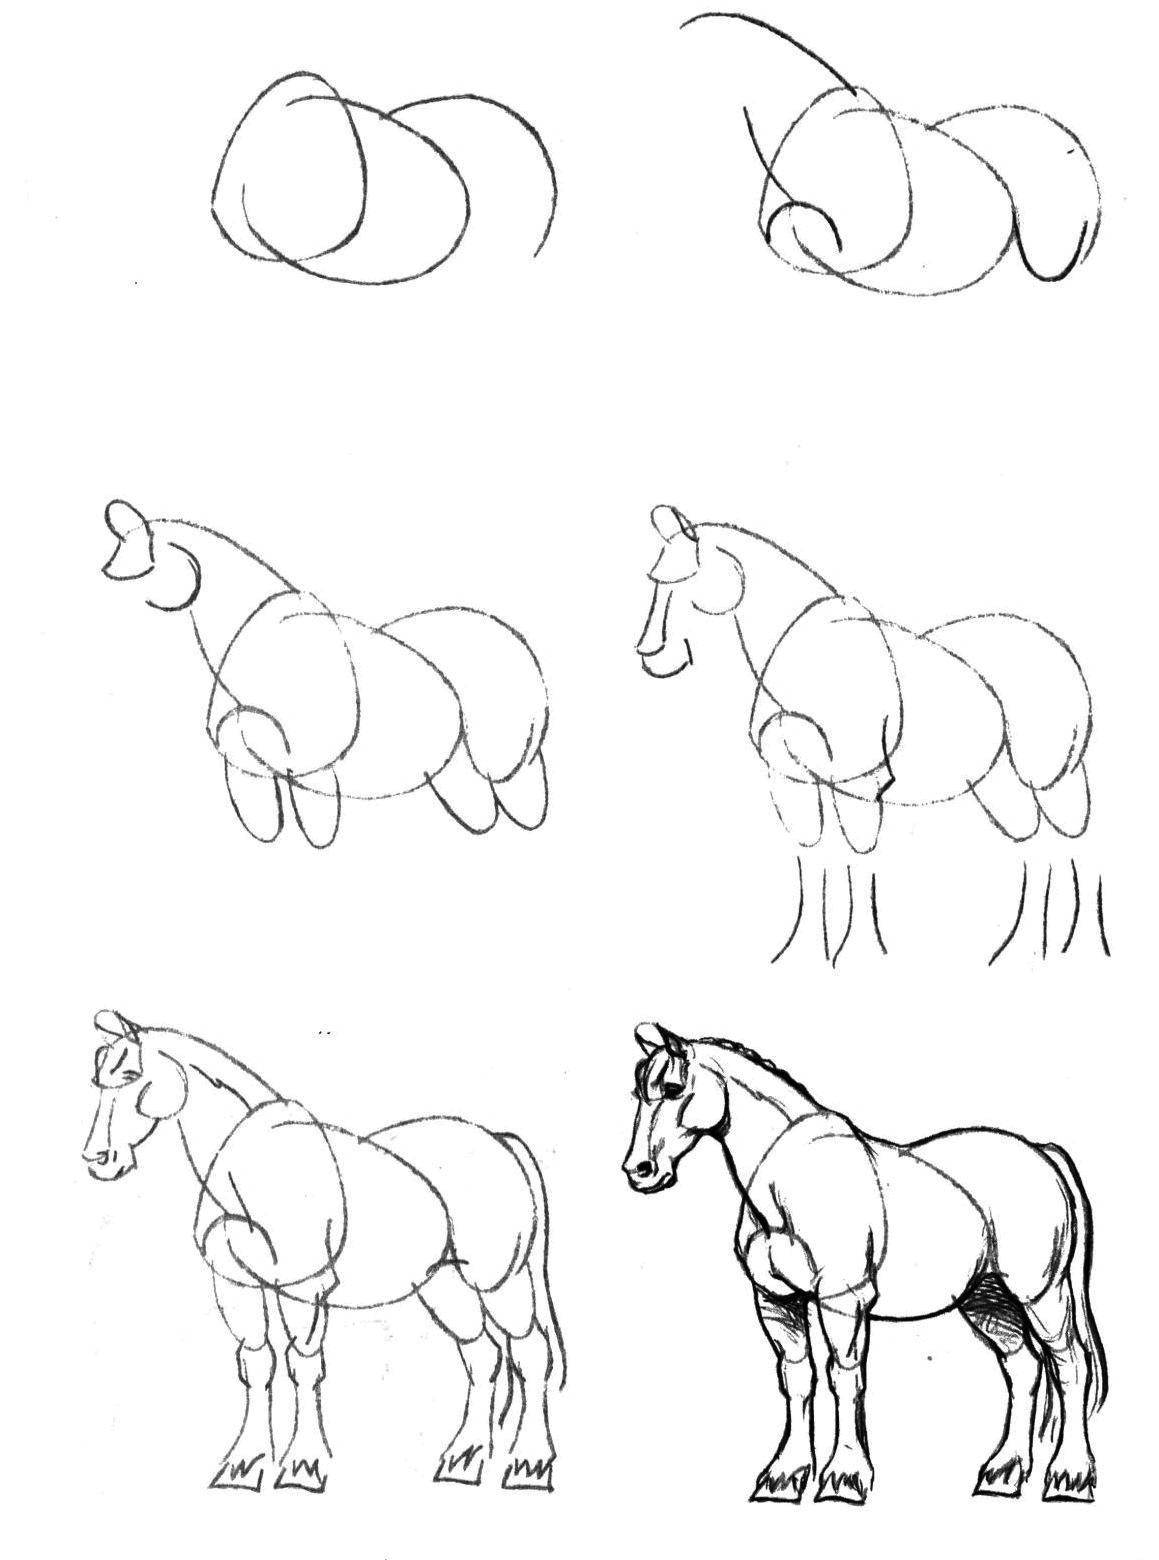 Как начать рисовать. Рисунок карандашом пошагово. Пошаговое рисование коня. Рисование лошади пошагово. Поэтапные рисунки животных карандашом.